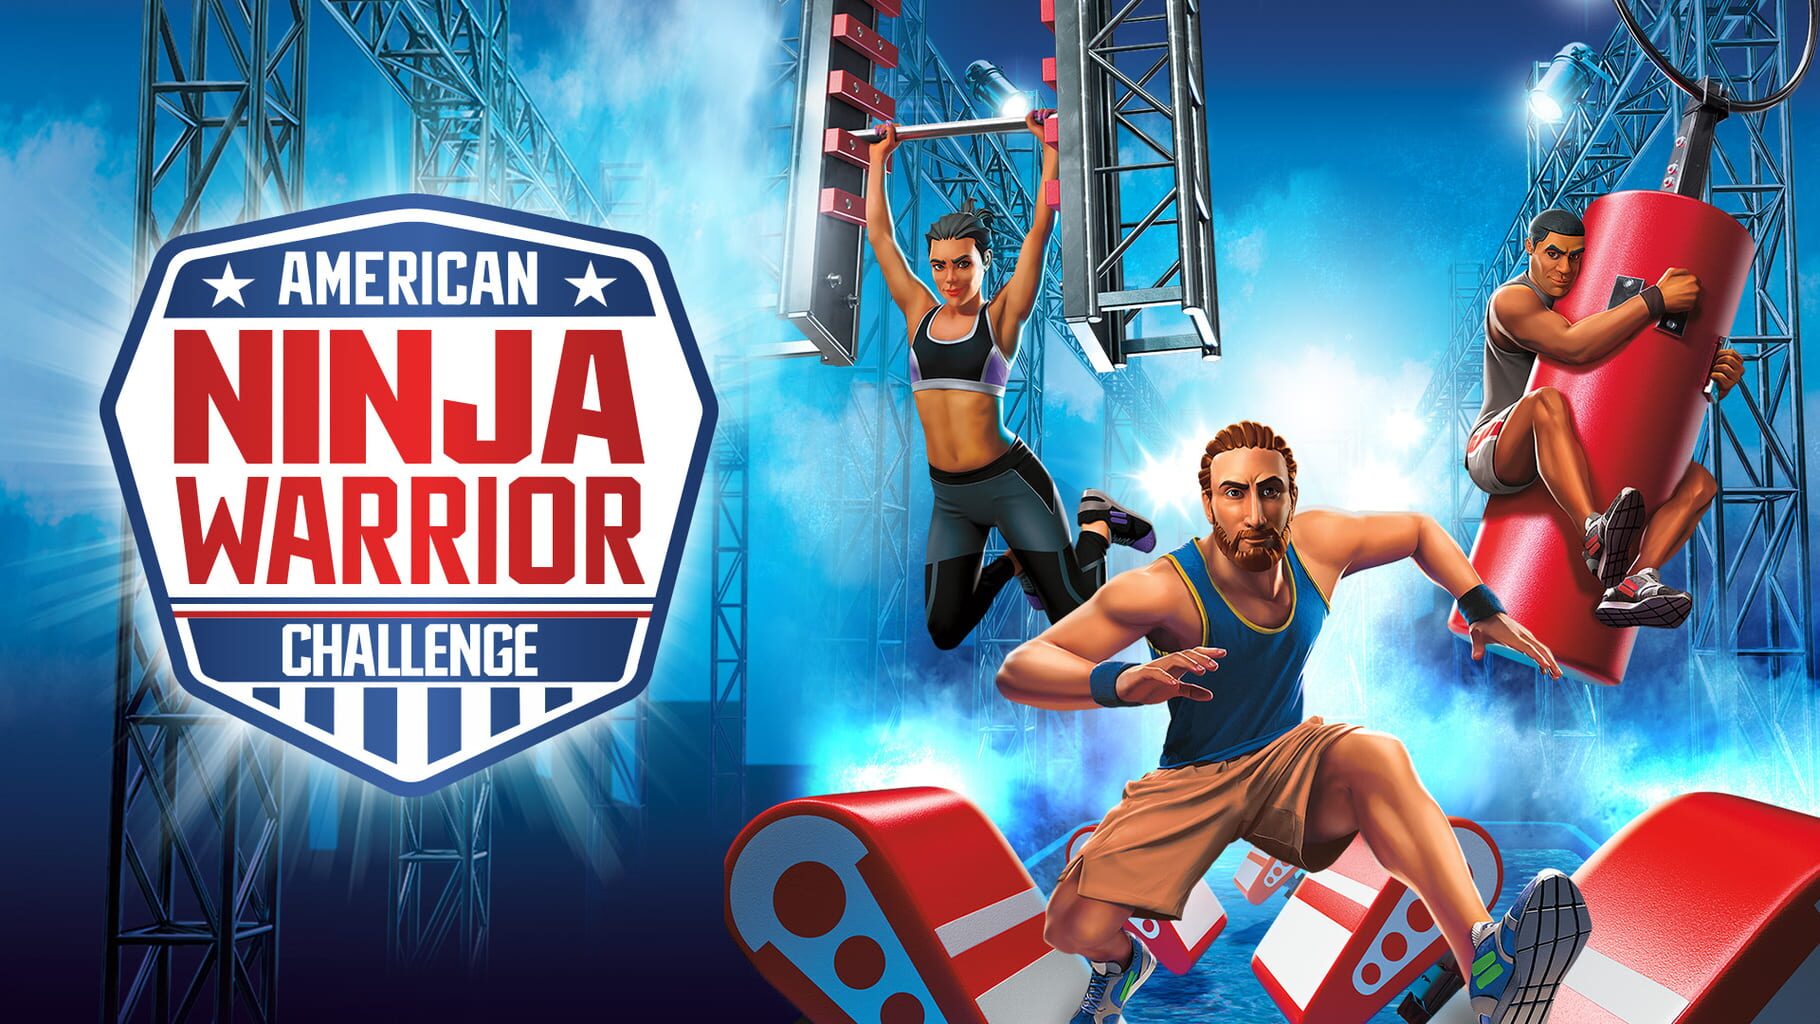 American Ninja Warrior: Challenge artwork